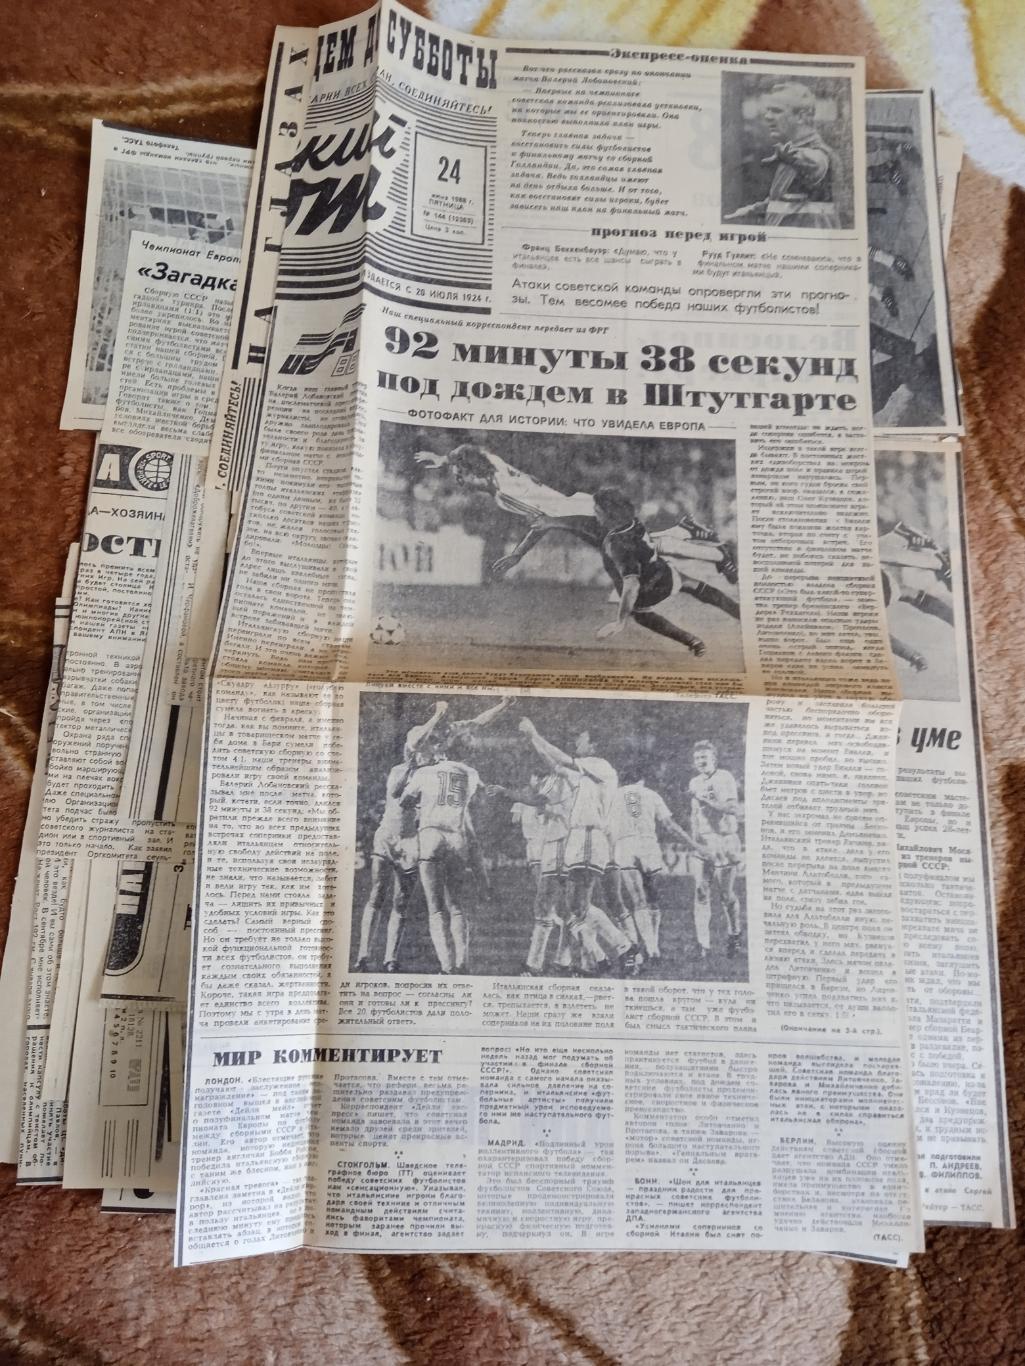 Статья.Футбол.Чемпионат Европы 1988.ФРГ.Газета Советский спорт 1988.